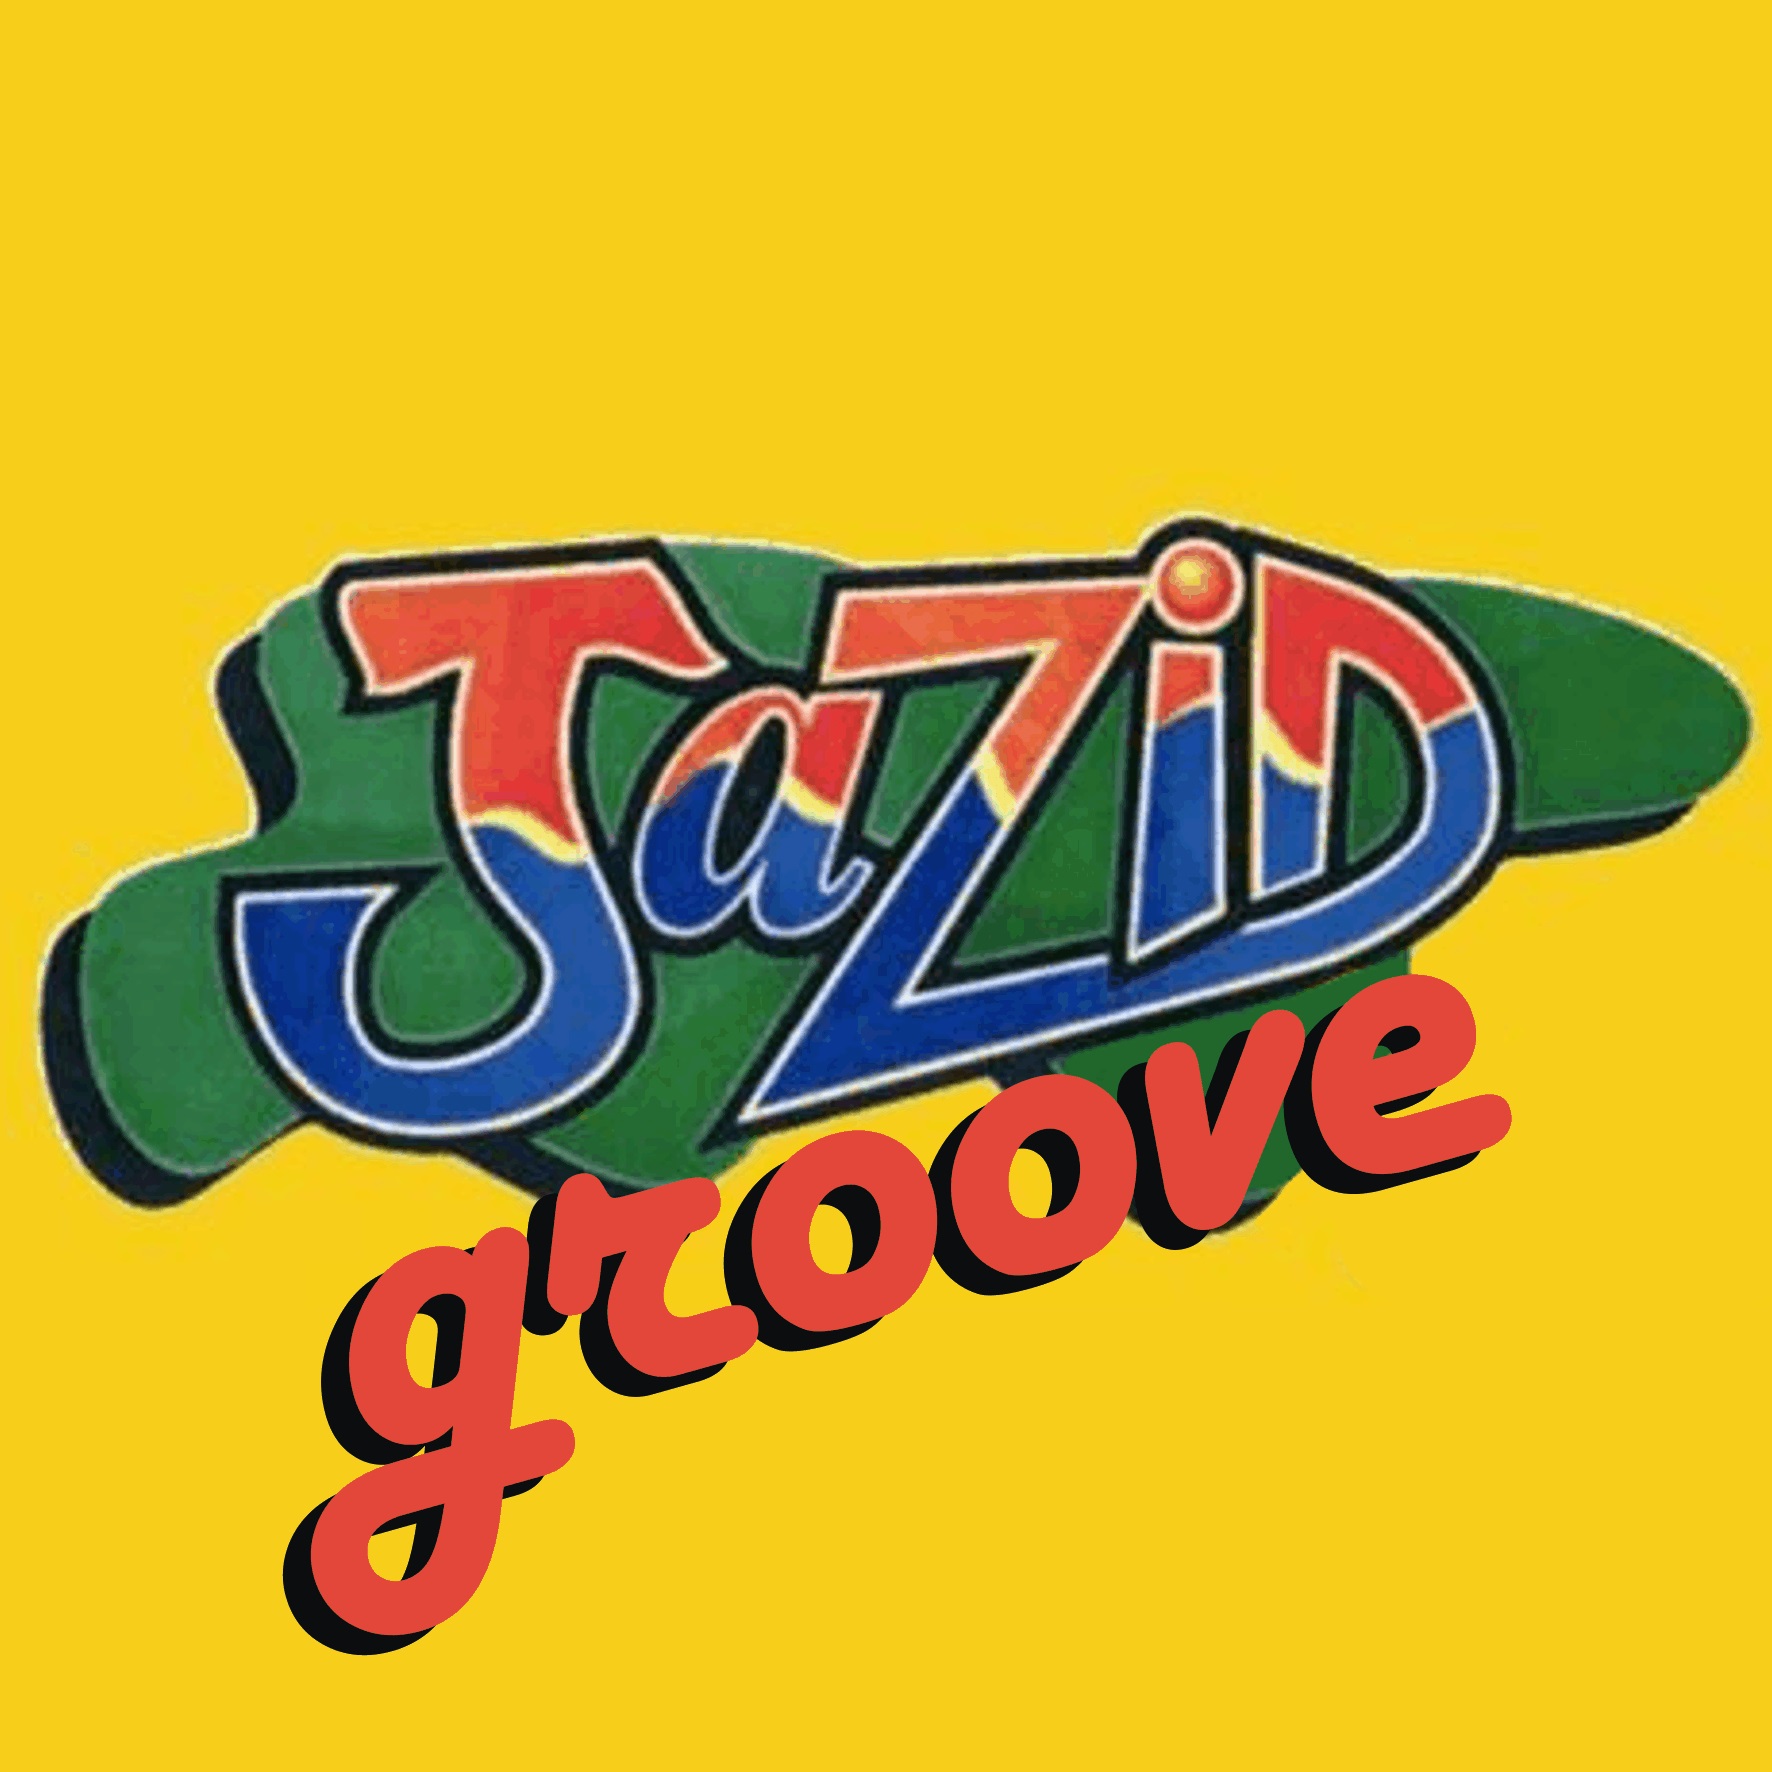 Jazid Groove 63